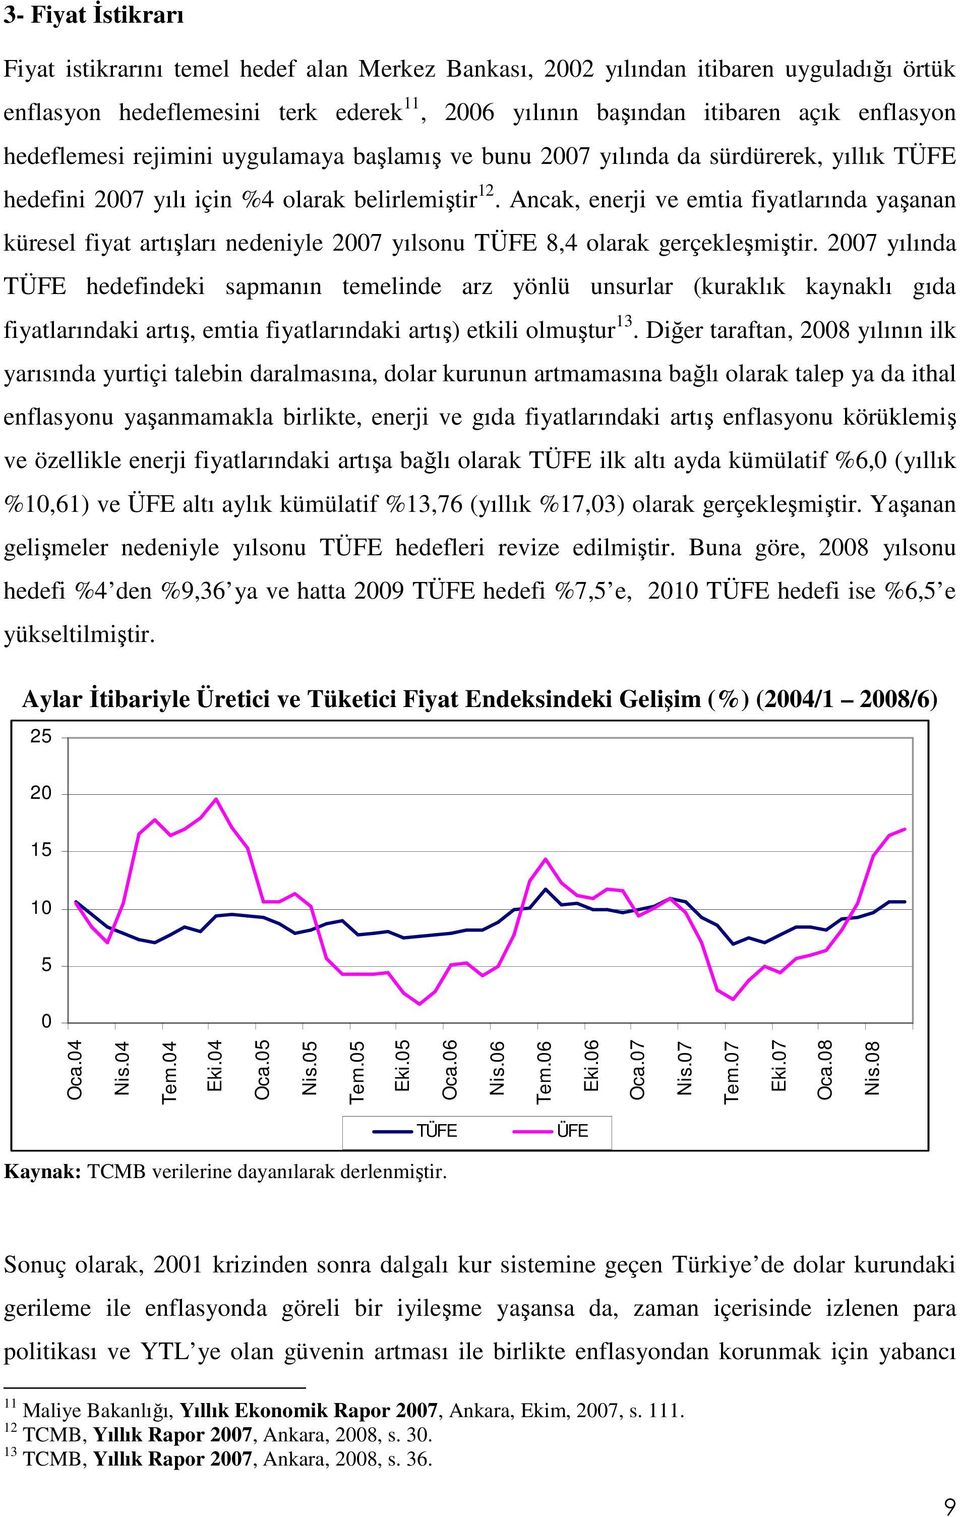 Ancak, enerji ve emtia fiyatlarında yaşanan küresel fiyat artışları nedeniyle 2007 yılsonu TÜFE 8,4 olarak gerçekleşmiştir.